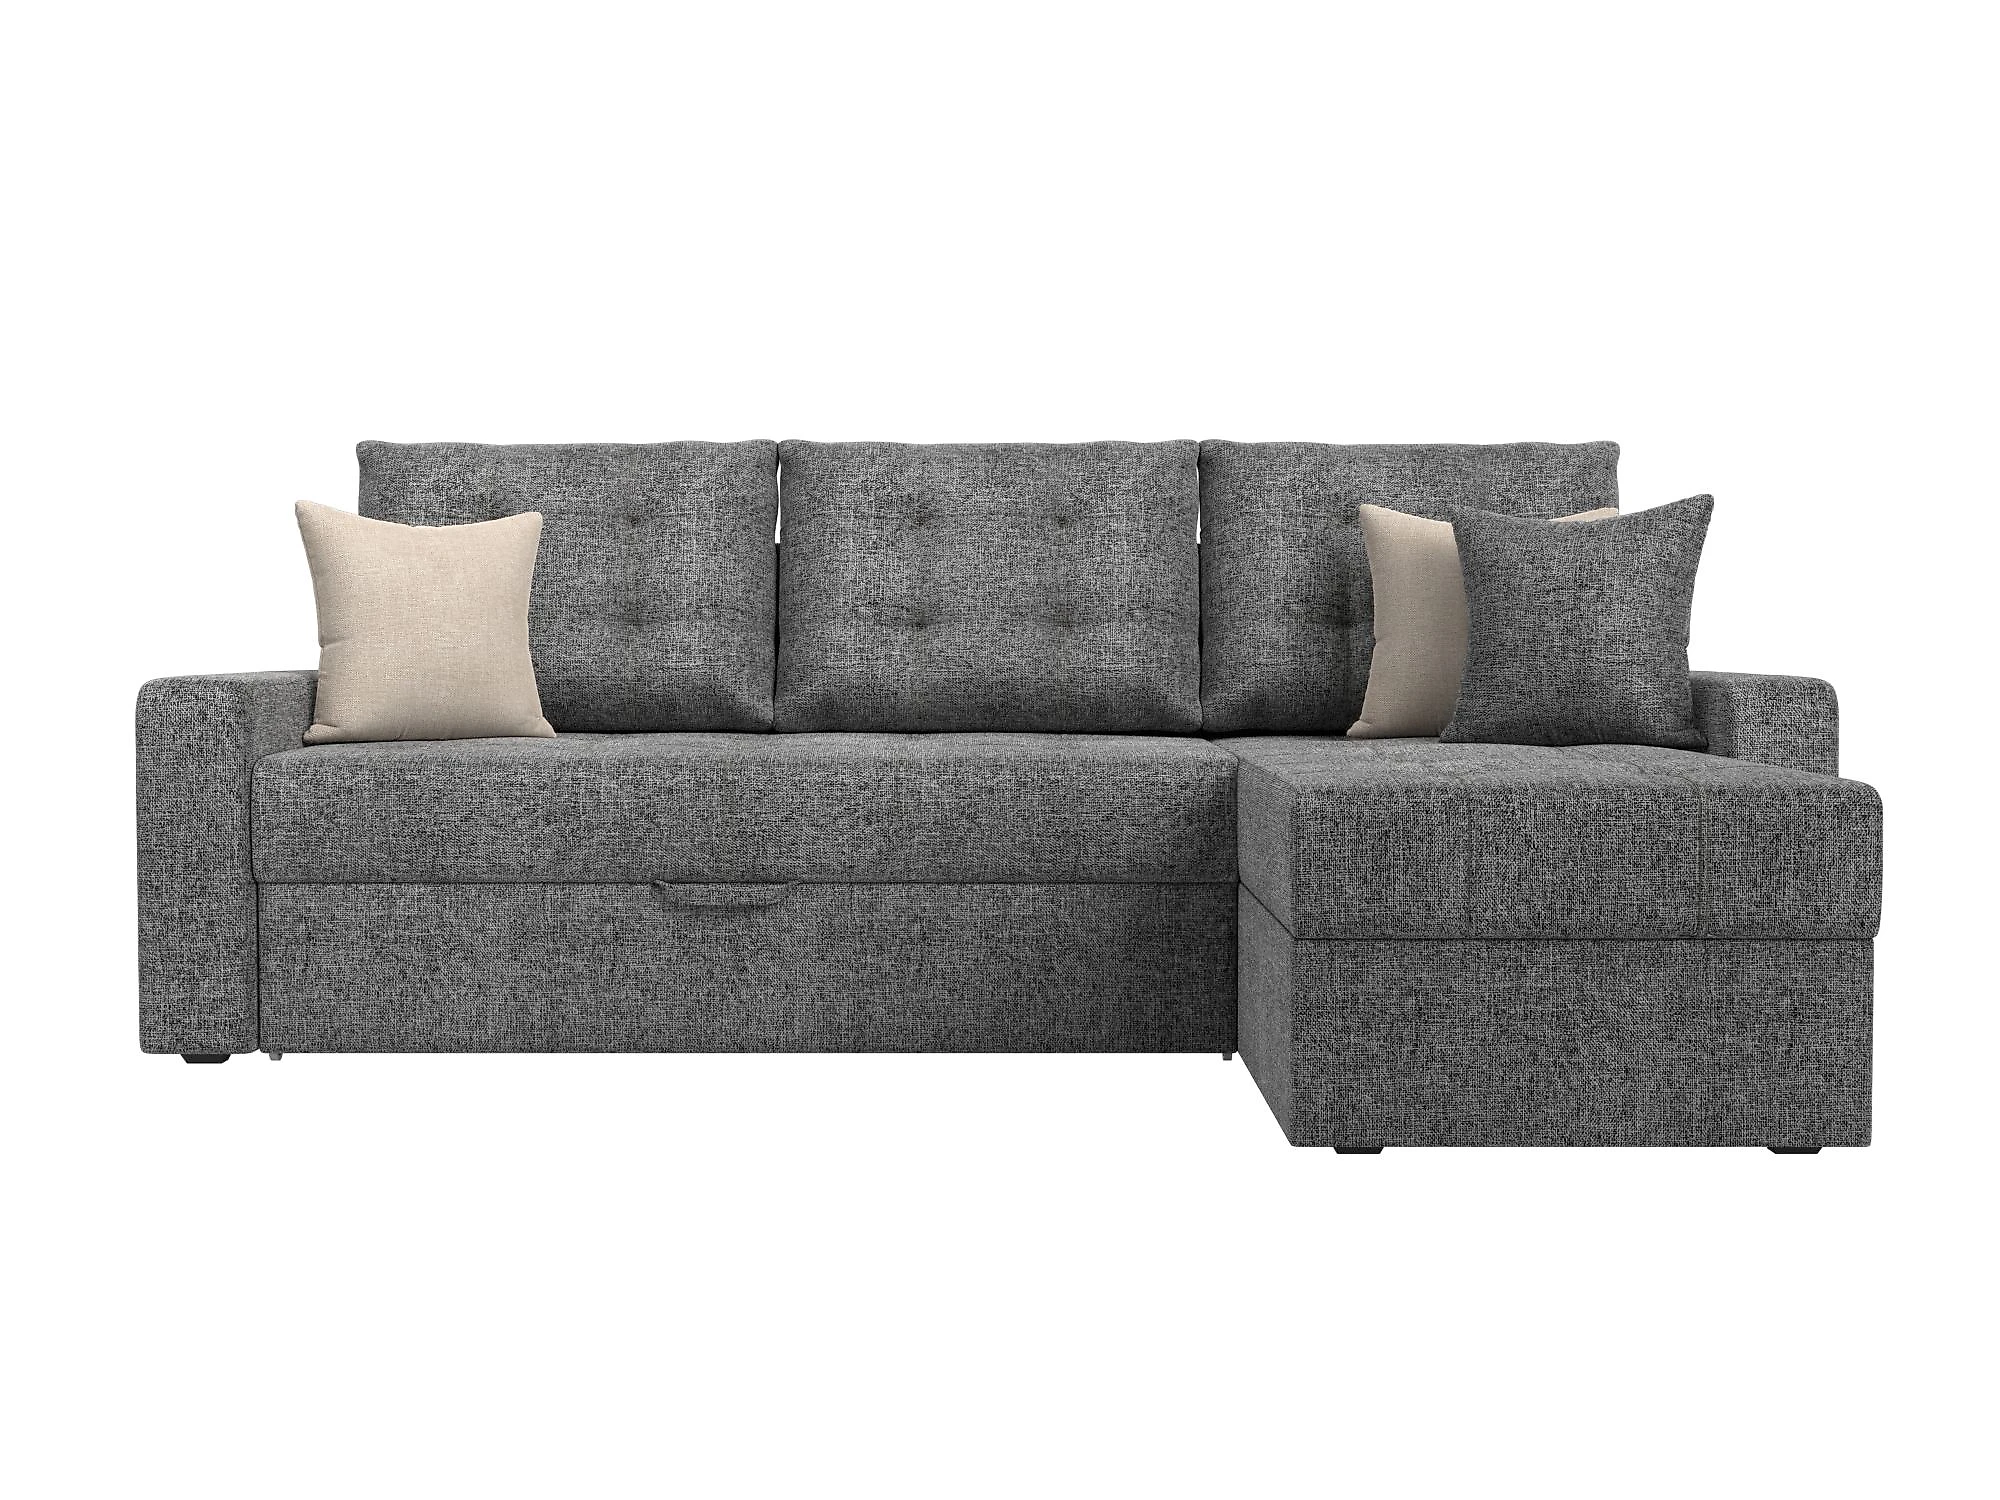  угловой диван из рогожки Ливерпуль Кантри Дизайн 1